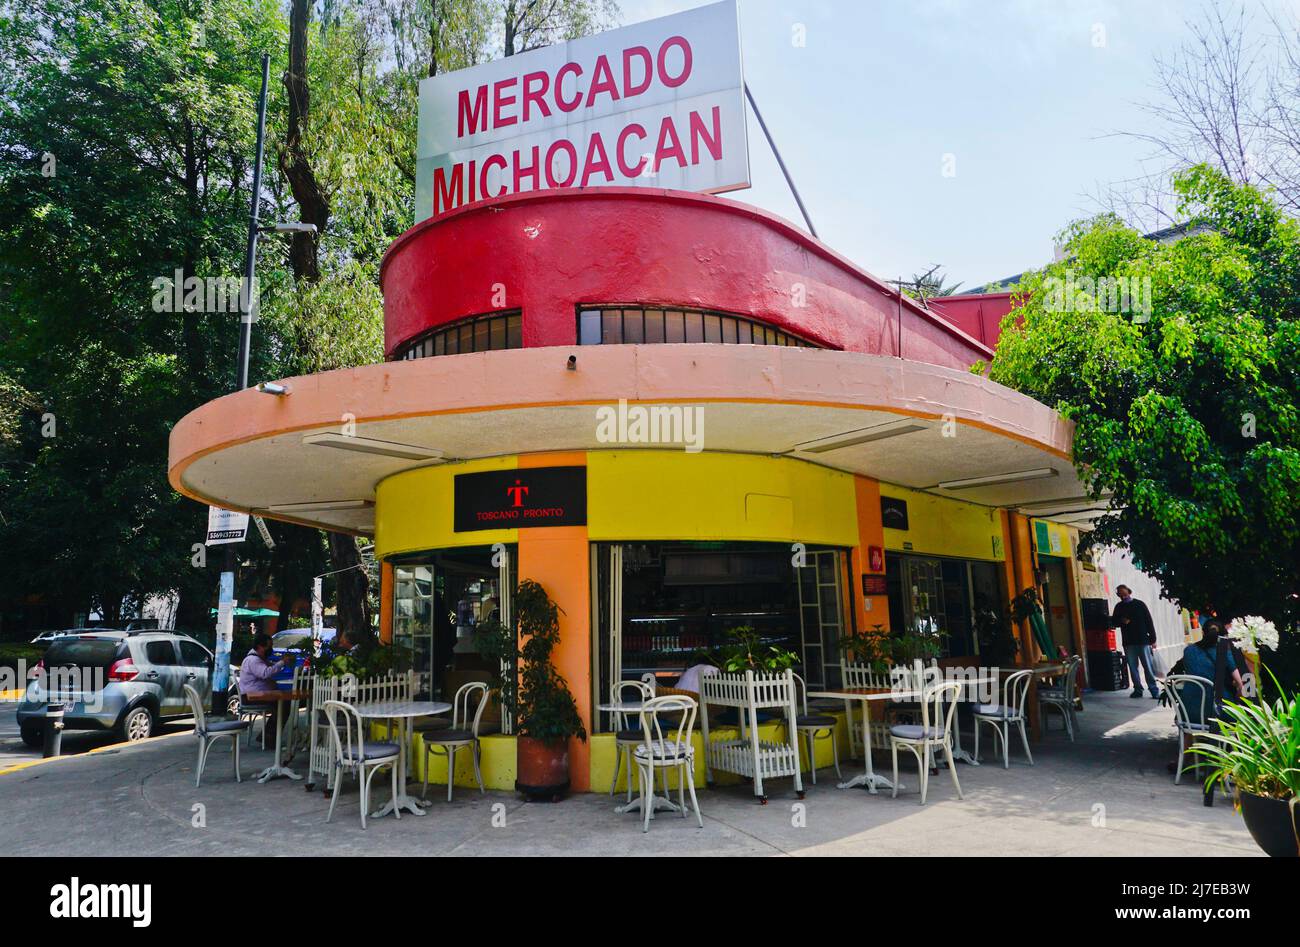 Café Toscano Pronto, Mercado Michoacán en el rico barrio de Colonia Condesa, Ciudad de México, México Foto de stock